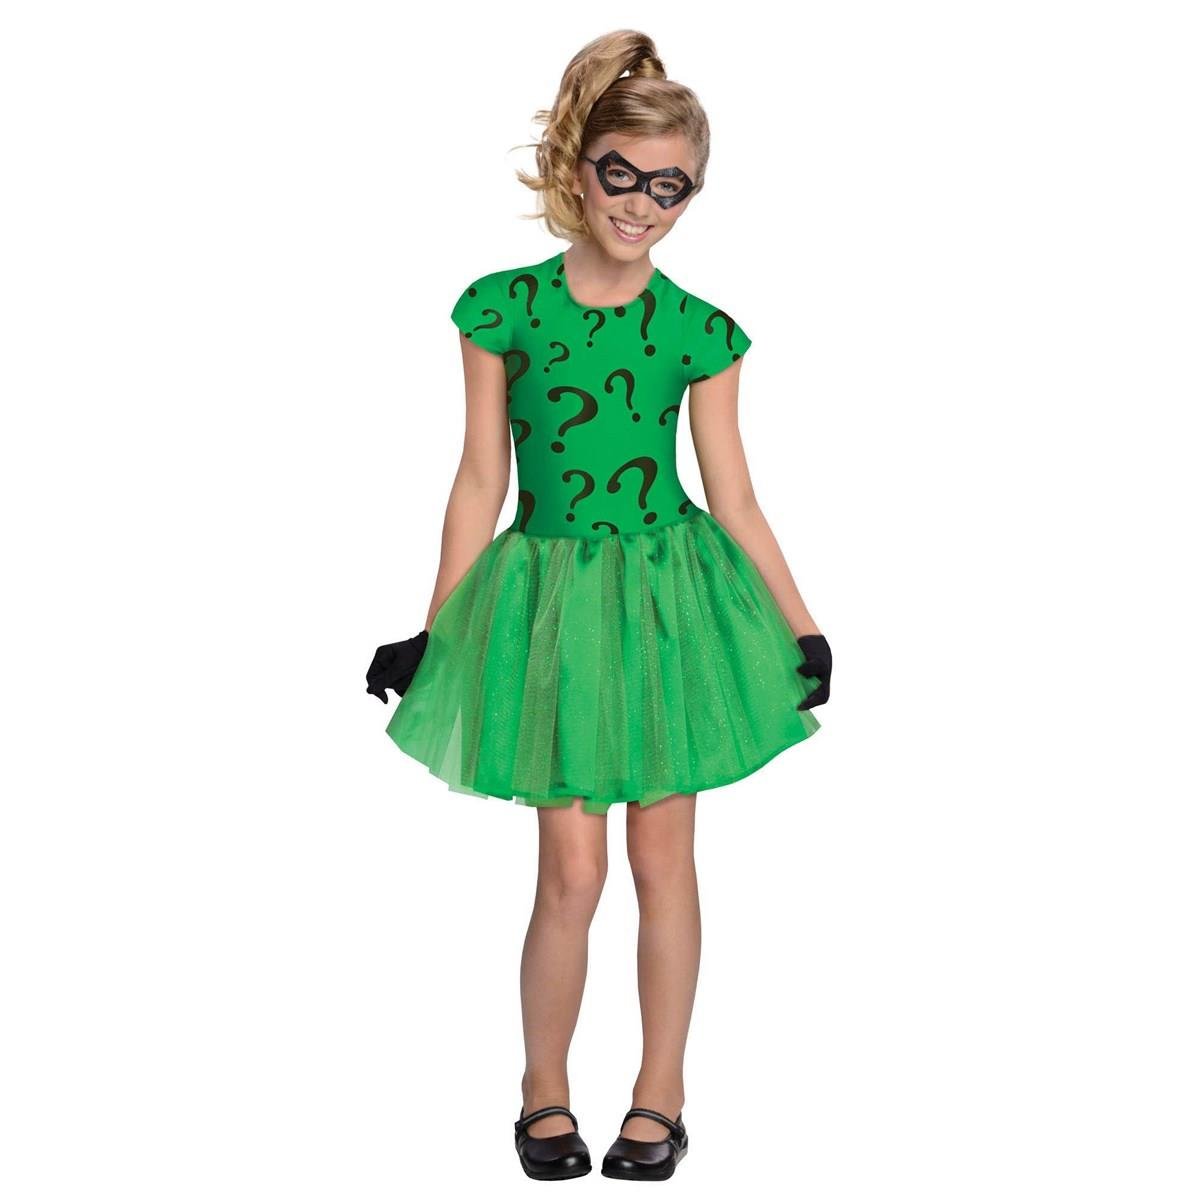 279933 Halloween Girls Riddler Tutu Dress Costume - Small